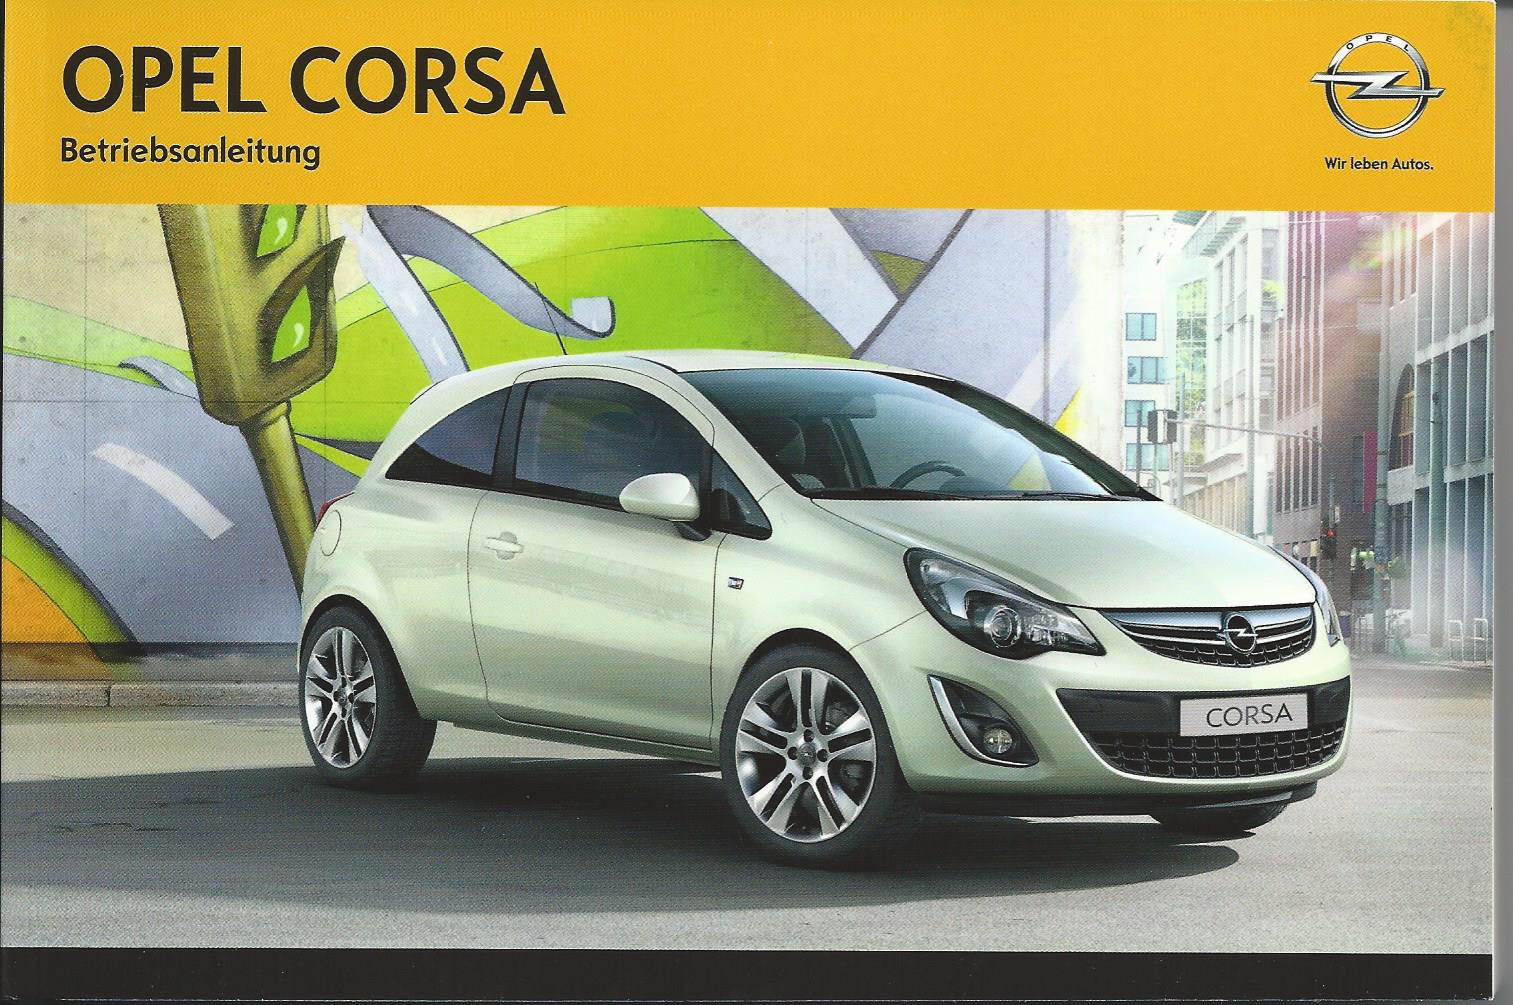 Opel Corsa D Betriebsanleitung 14 Bedienungsanleitung Handbuch Bordbuch Ba Ebay